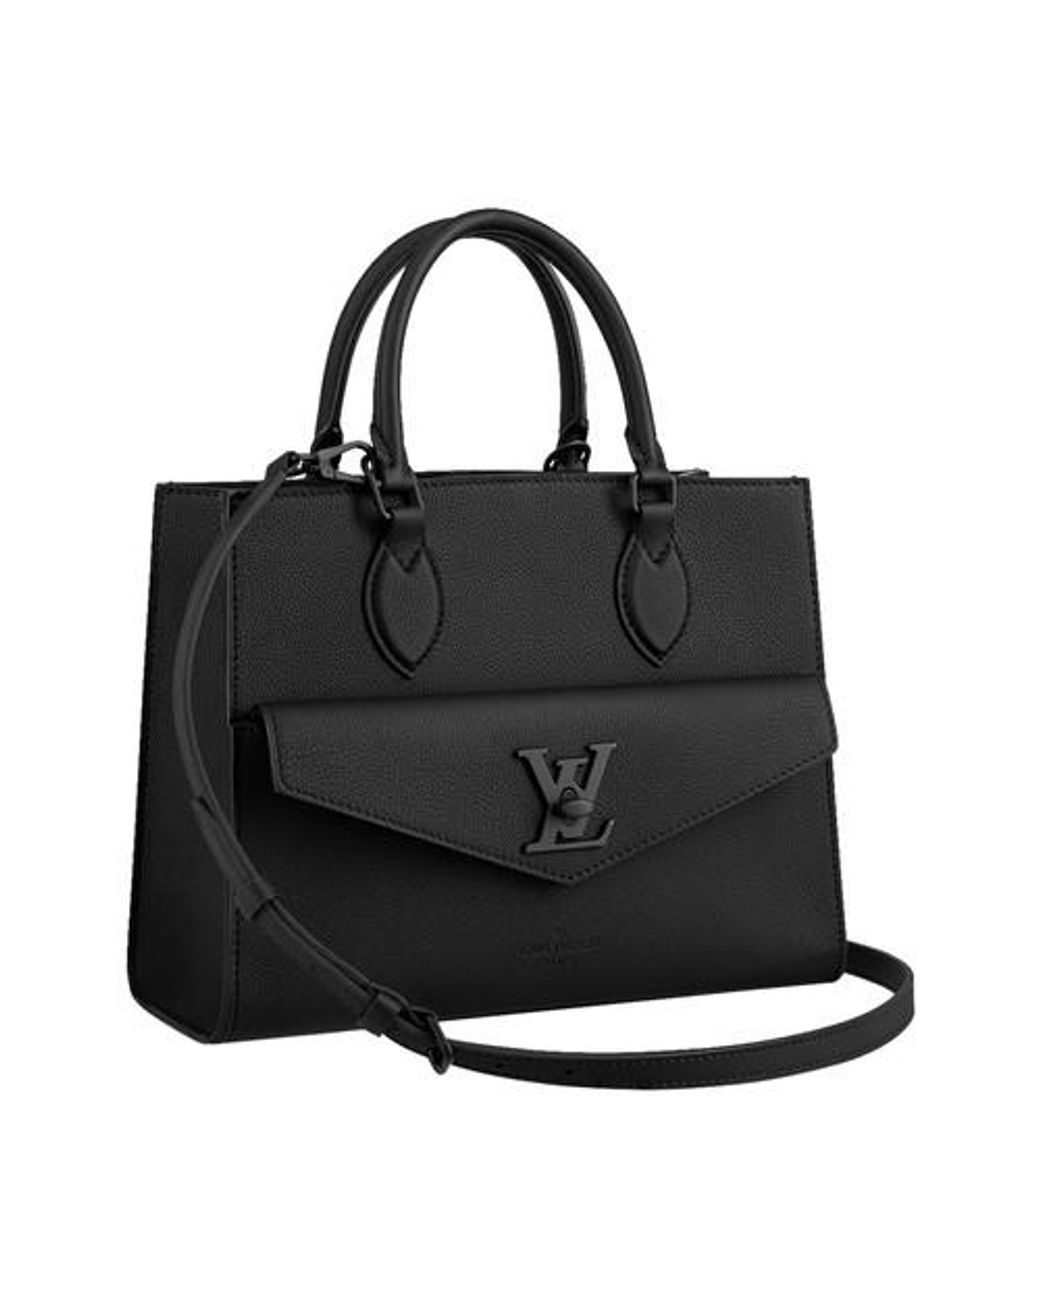 LOUIS VUITTON Authentic Women's Lock Me Go Tote Bag Black Leather  M55028